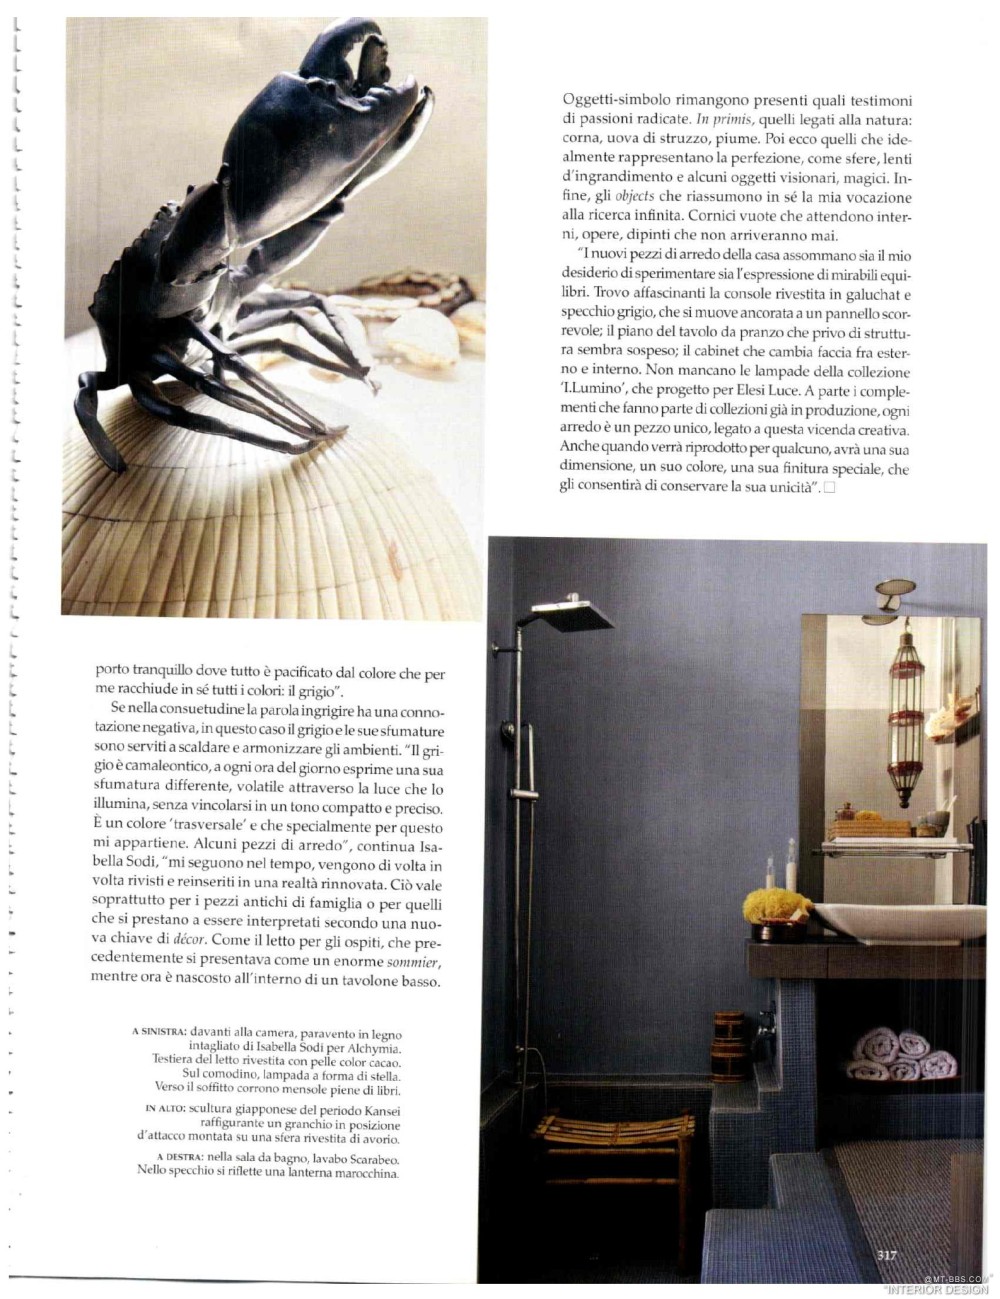 意大利AD 杂志 2012年全年JPG高清版本 全免（上传完毕）_0315.jpg